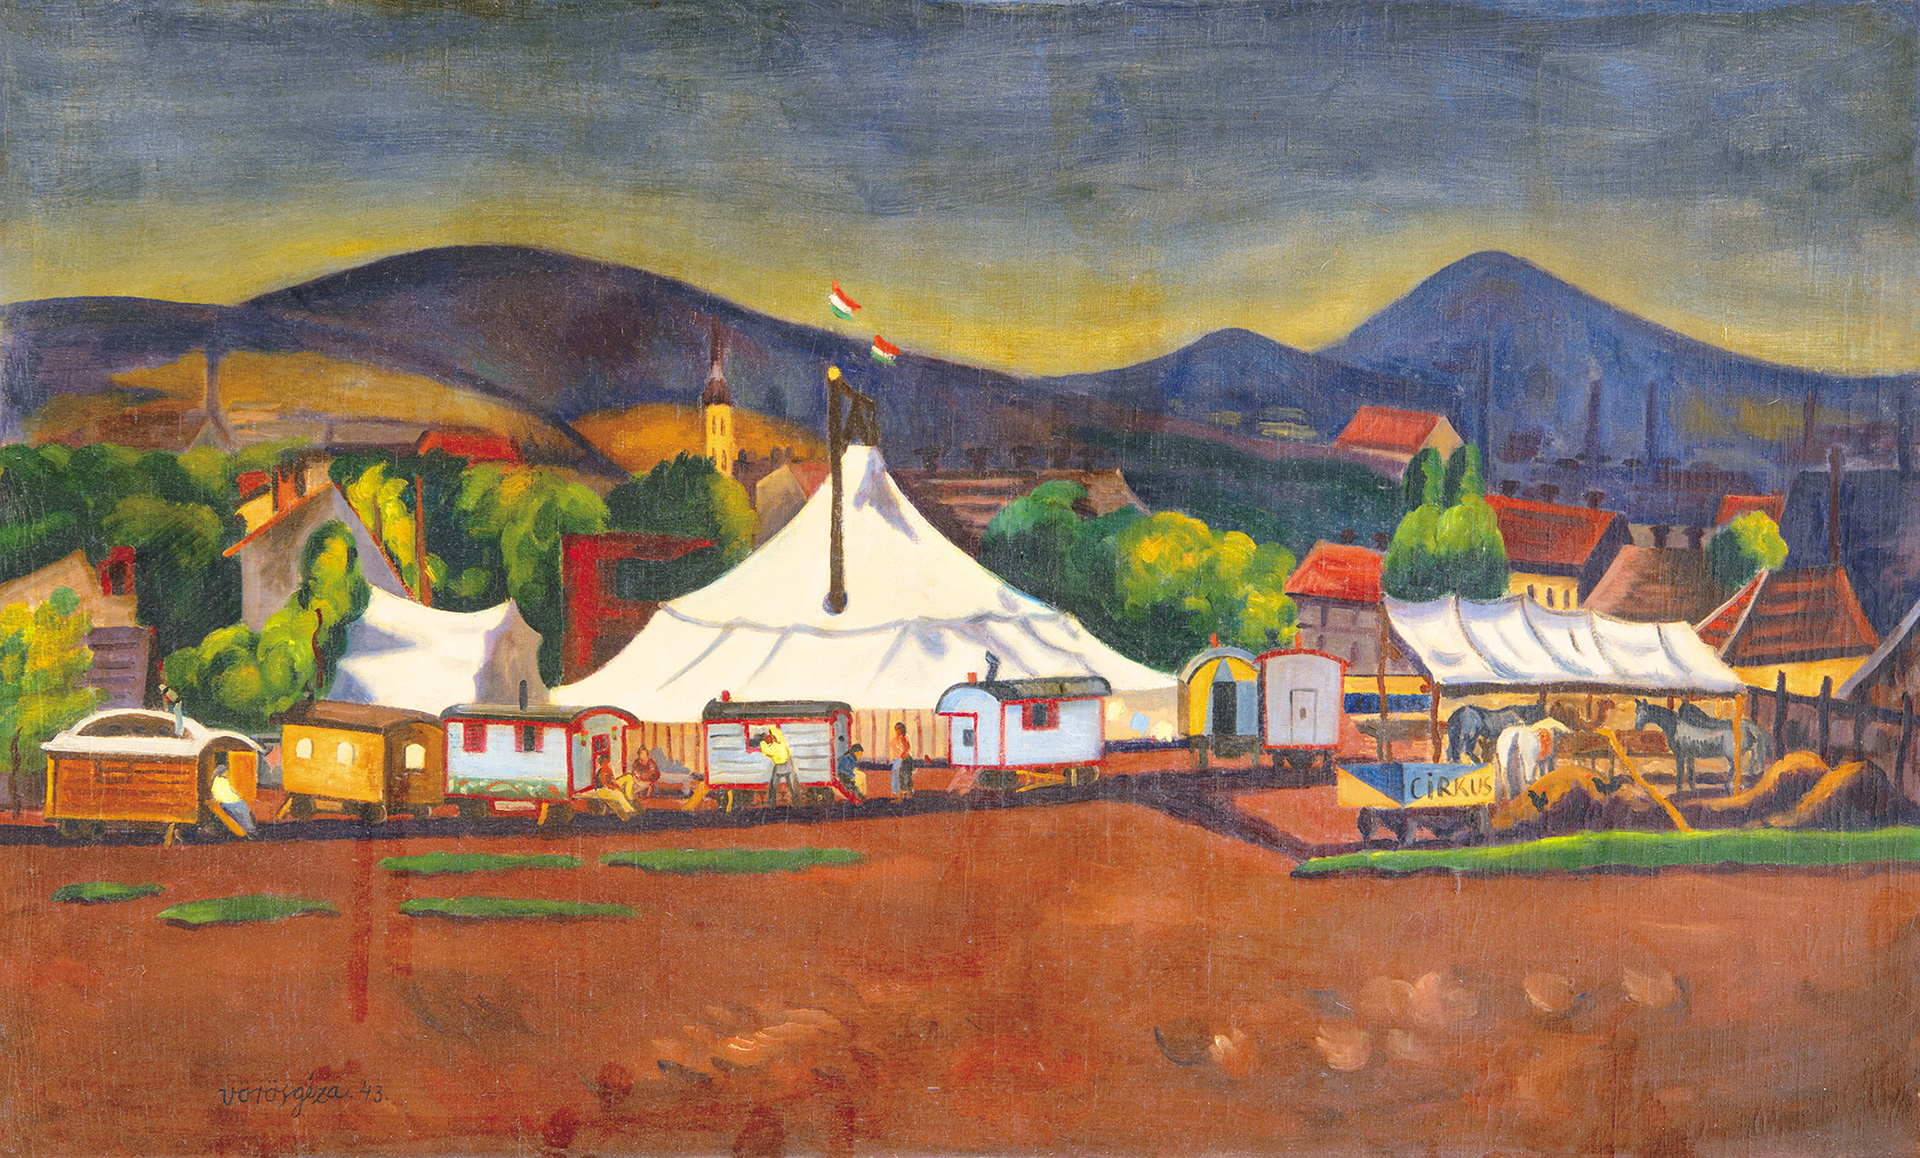 Vörös Géza (1897-1957) Little Circus, 1943